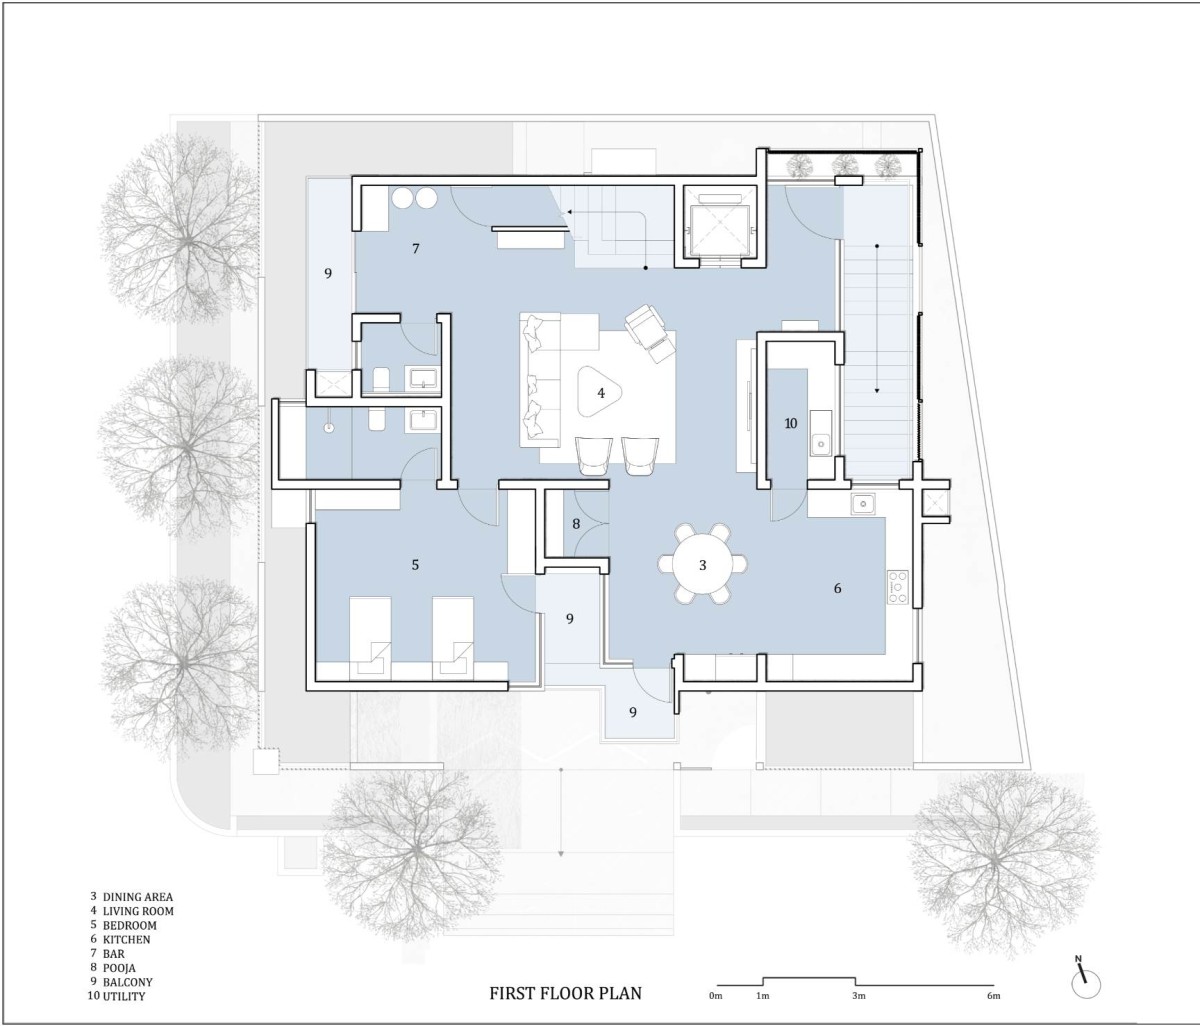 First floor plan of RL Residence by SDeG